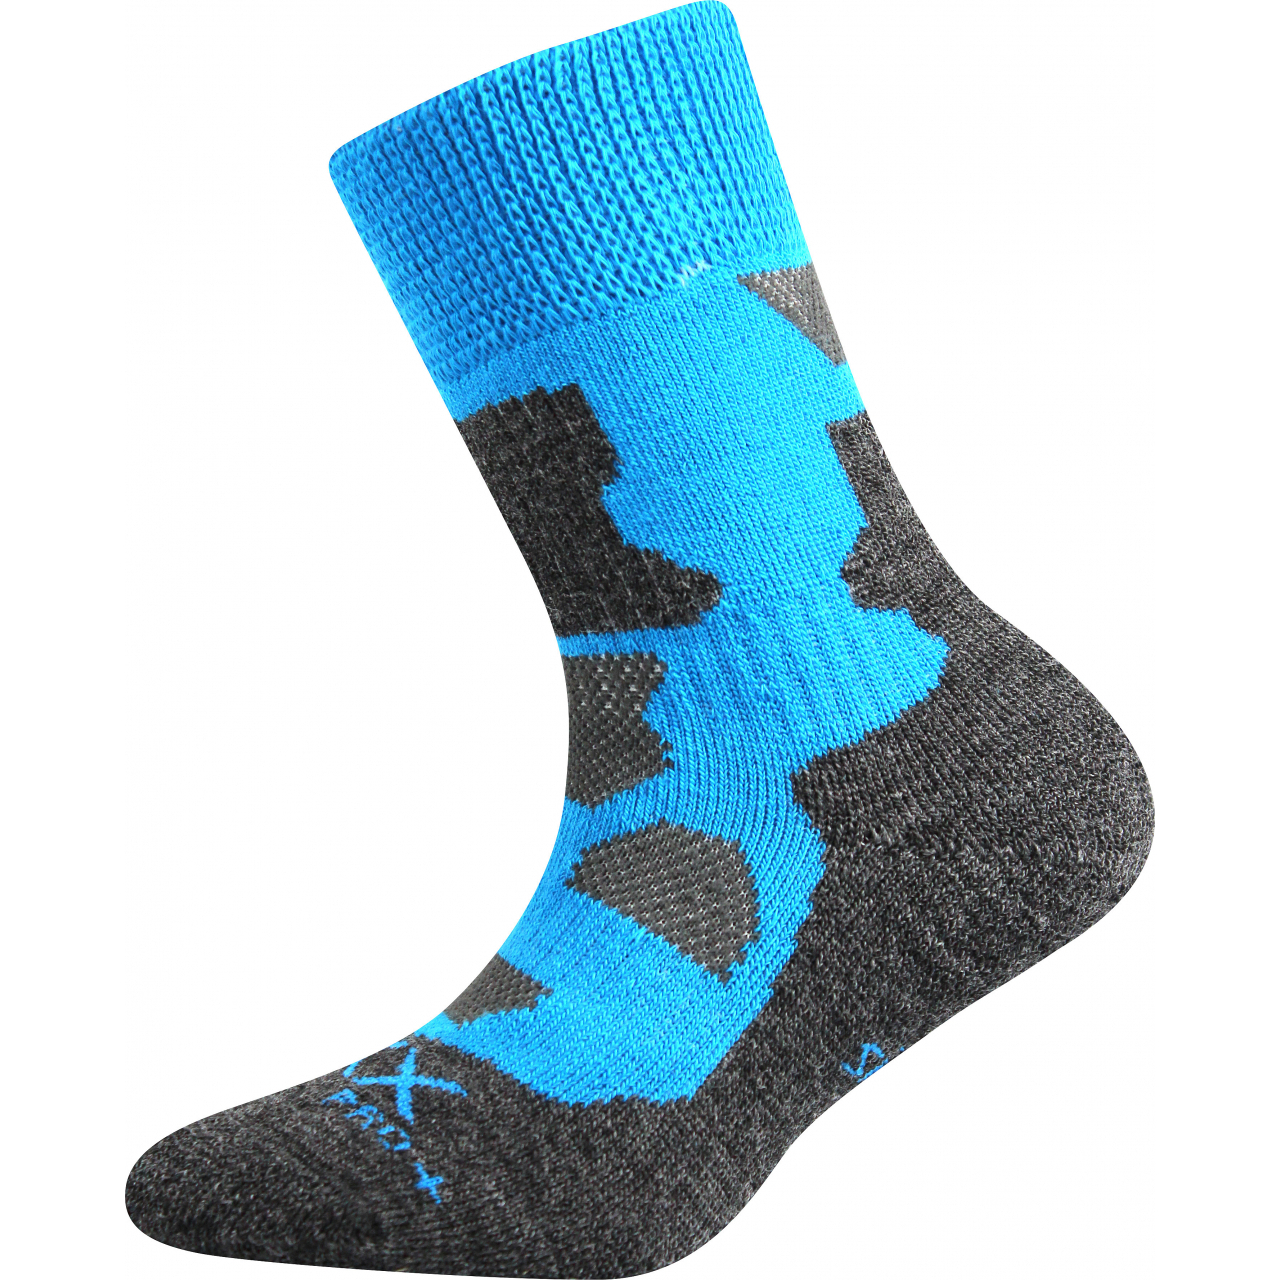 Ponožky dětské zimní Voxx Etrexík - modré-šedé, 16-19